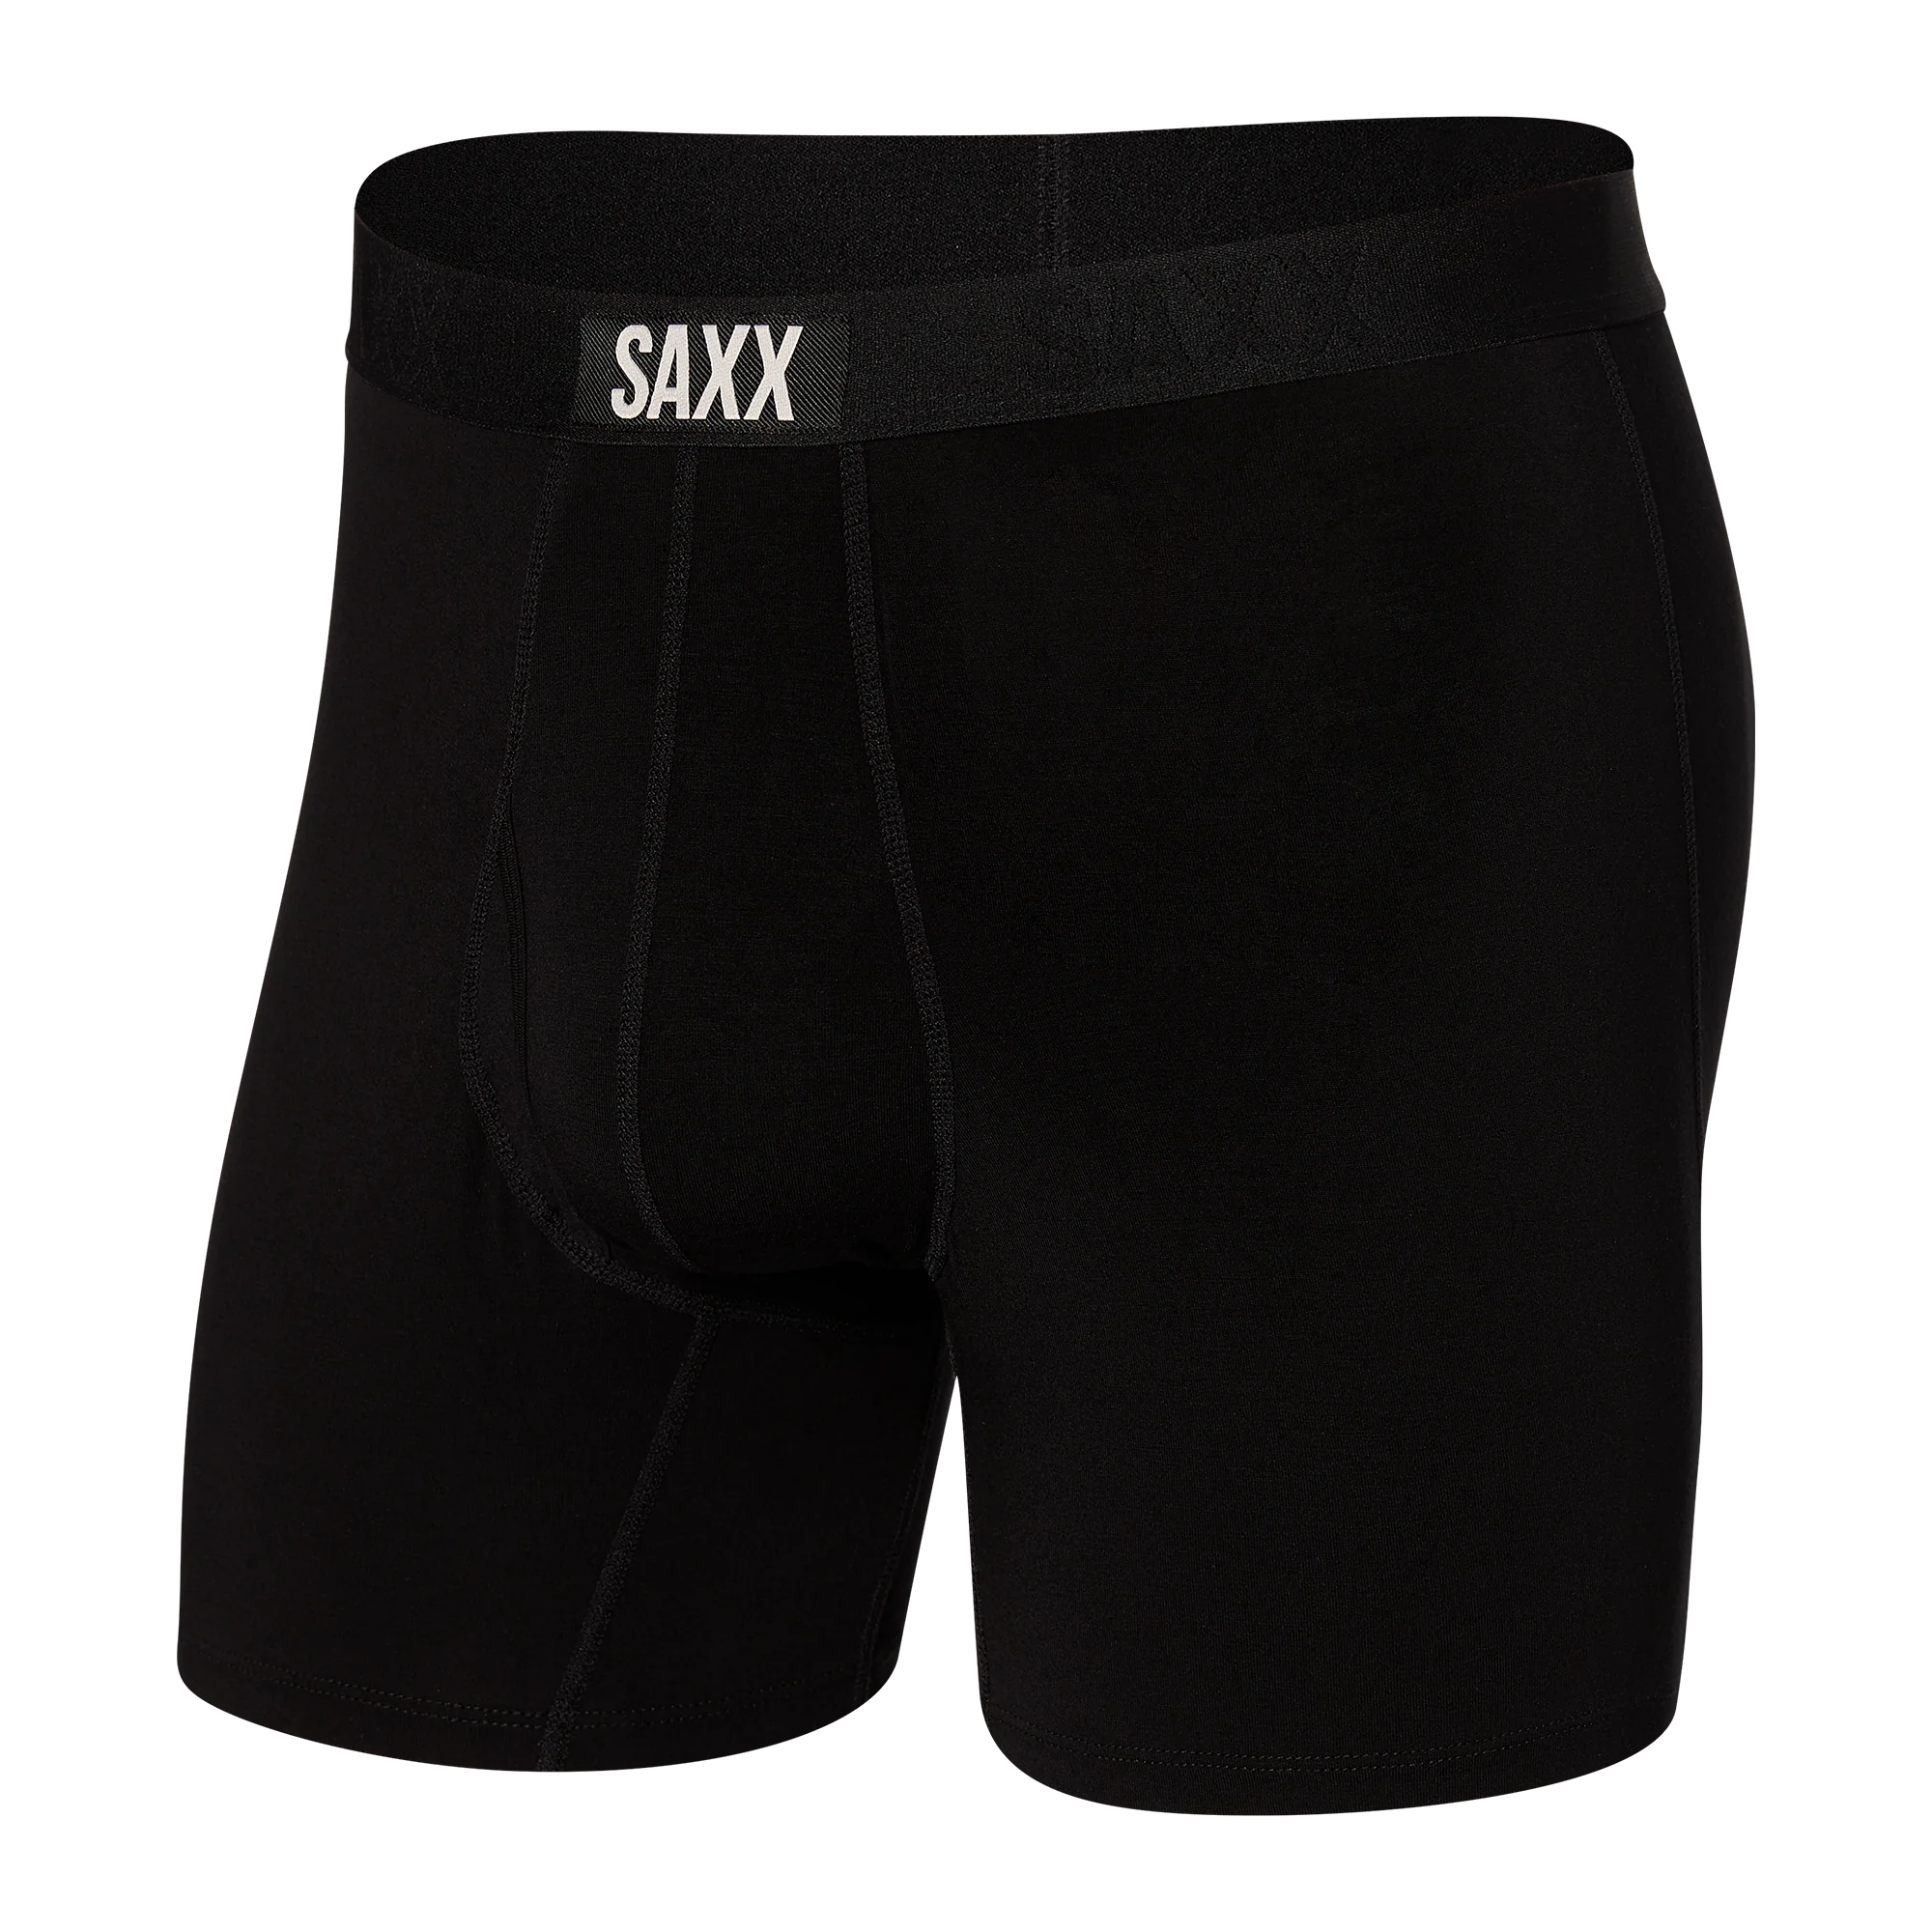 'SAXX Ultra Super Soft Boxer Brief - Black' in 'Black' colour